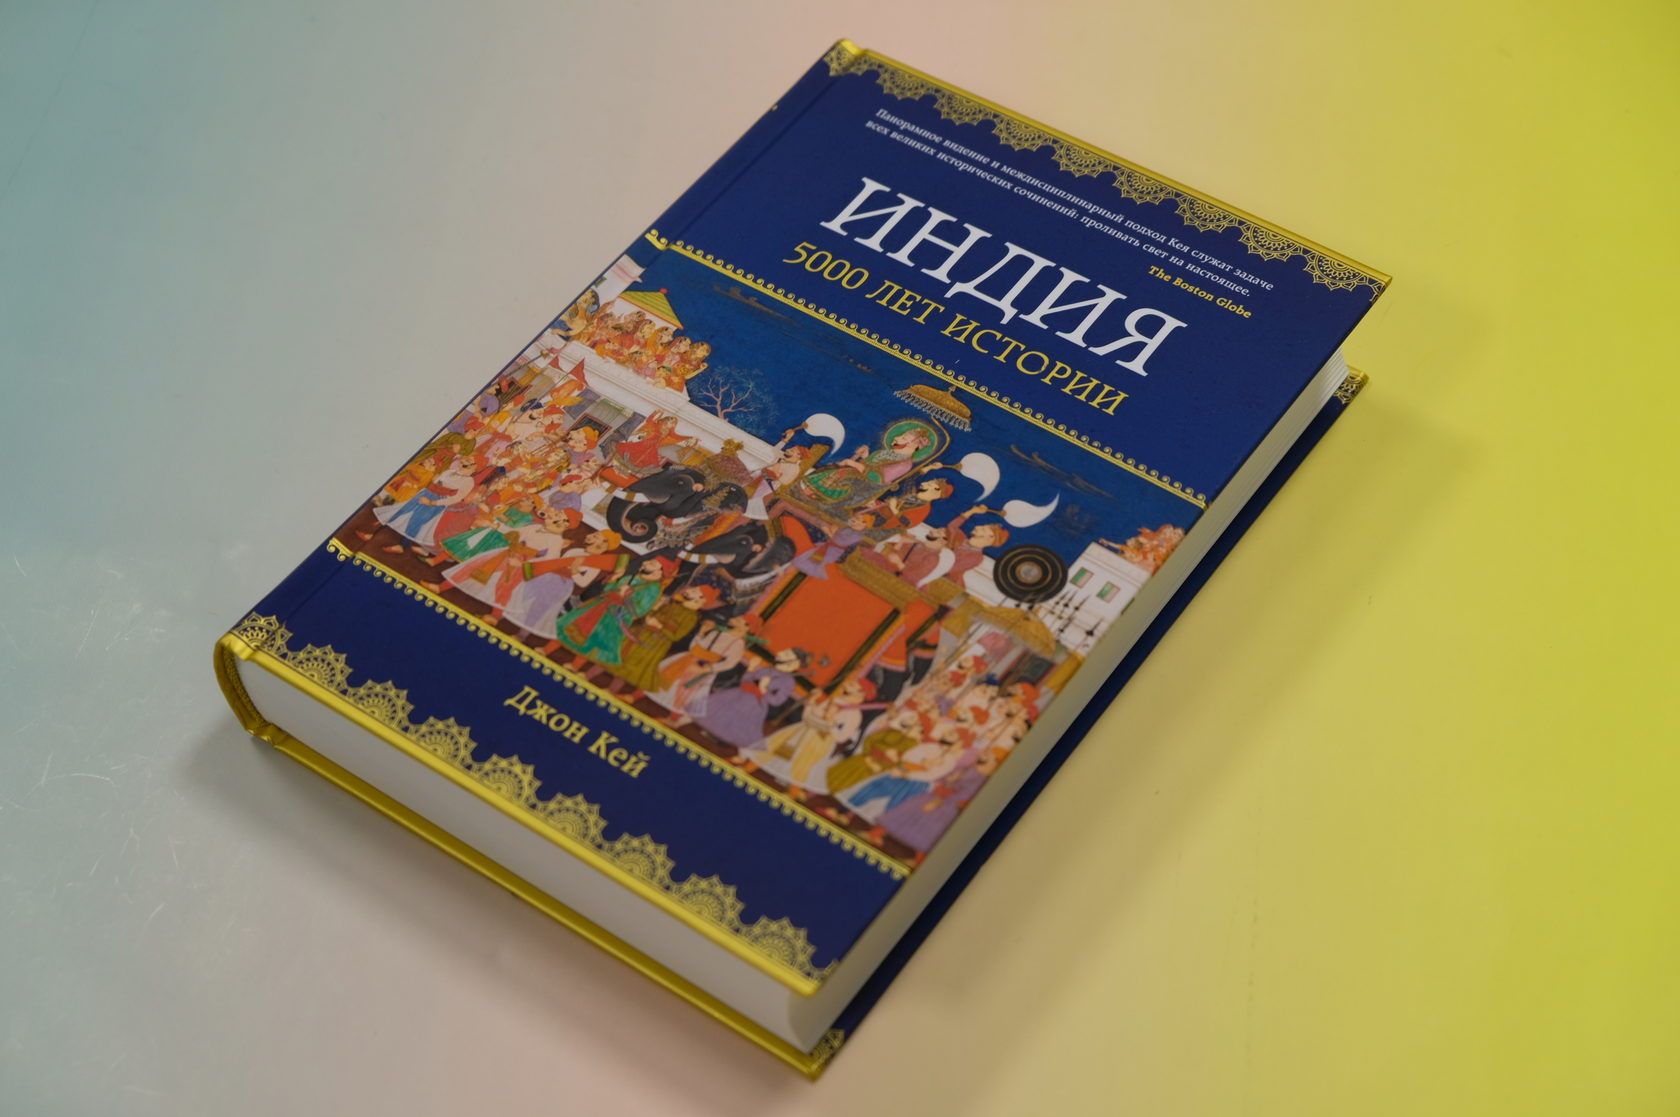 Книга Индия: 5000 лет истории, Кей Дж.